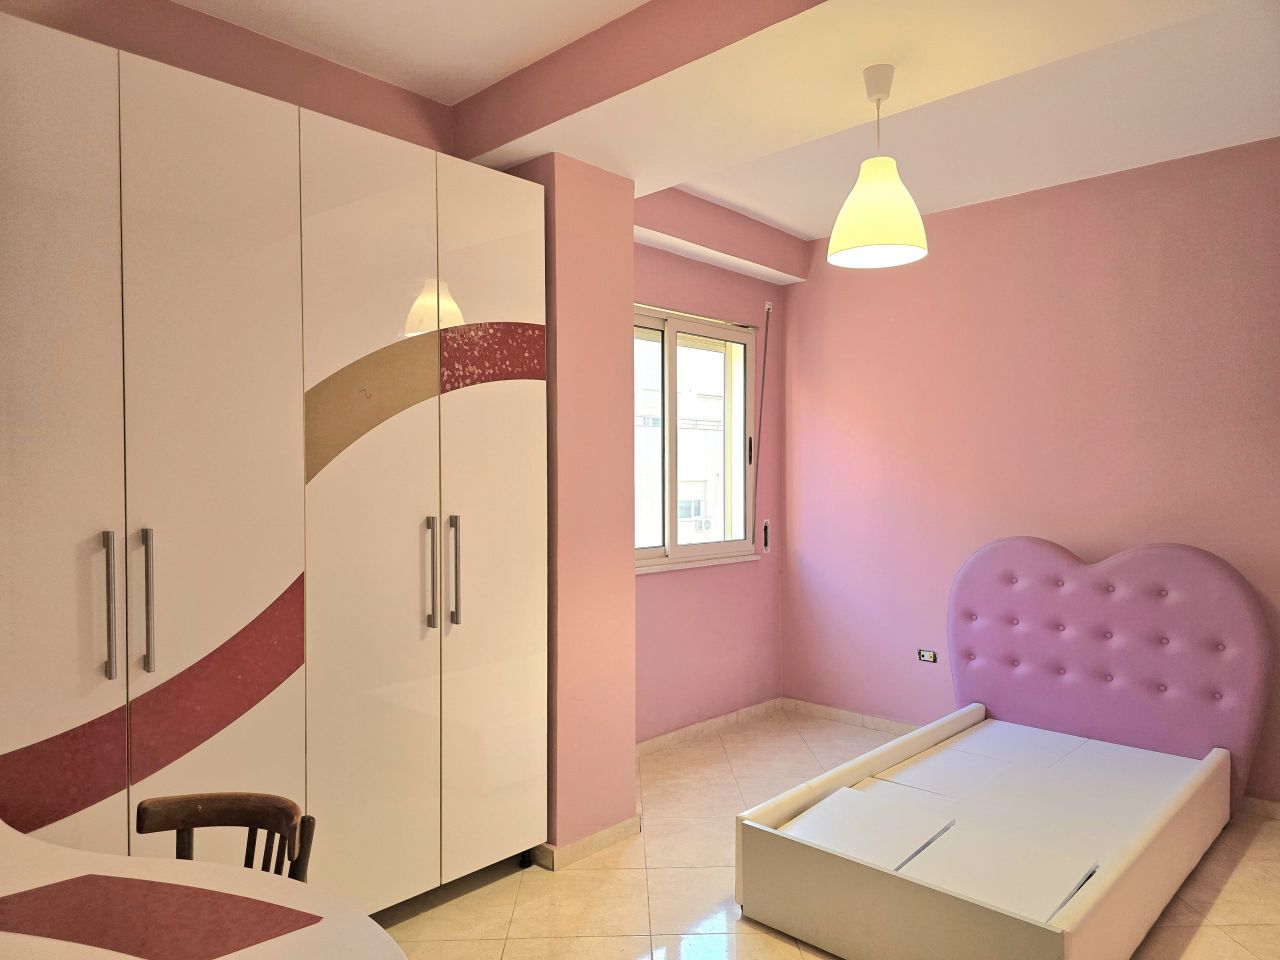 Mieszkanie Z Dwiema Sypialniami Na Sprzedaż W Tiranie W Albanii